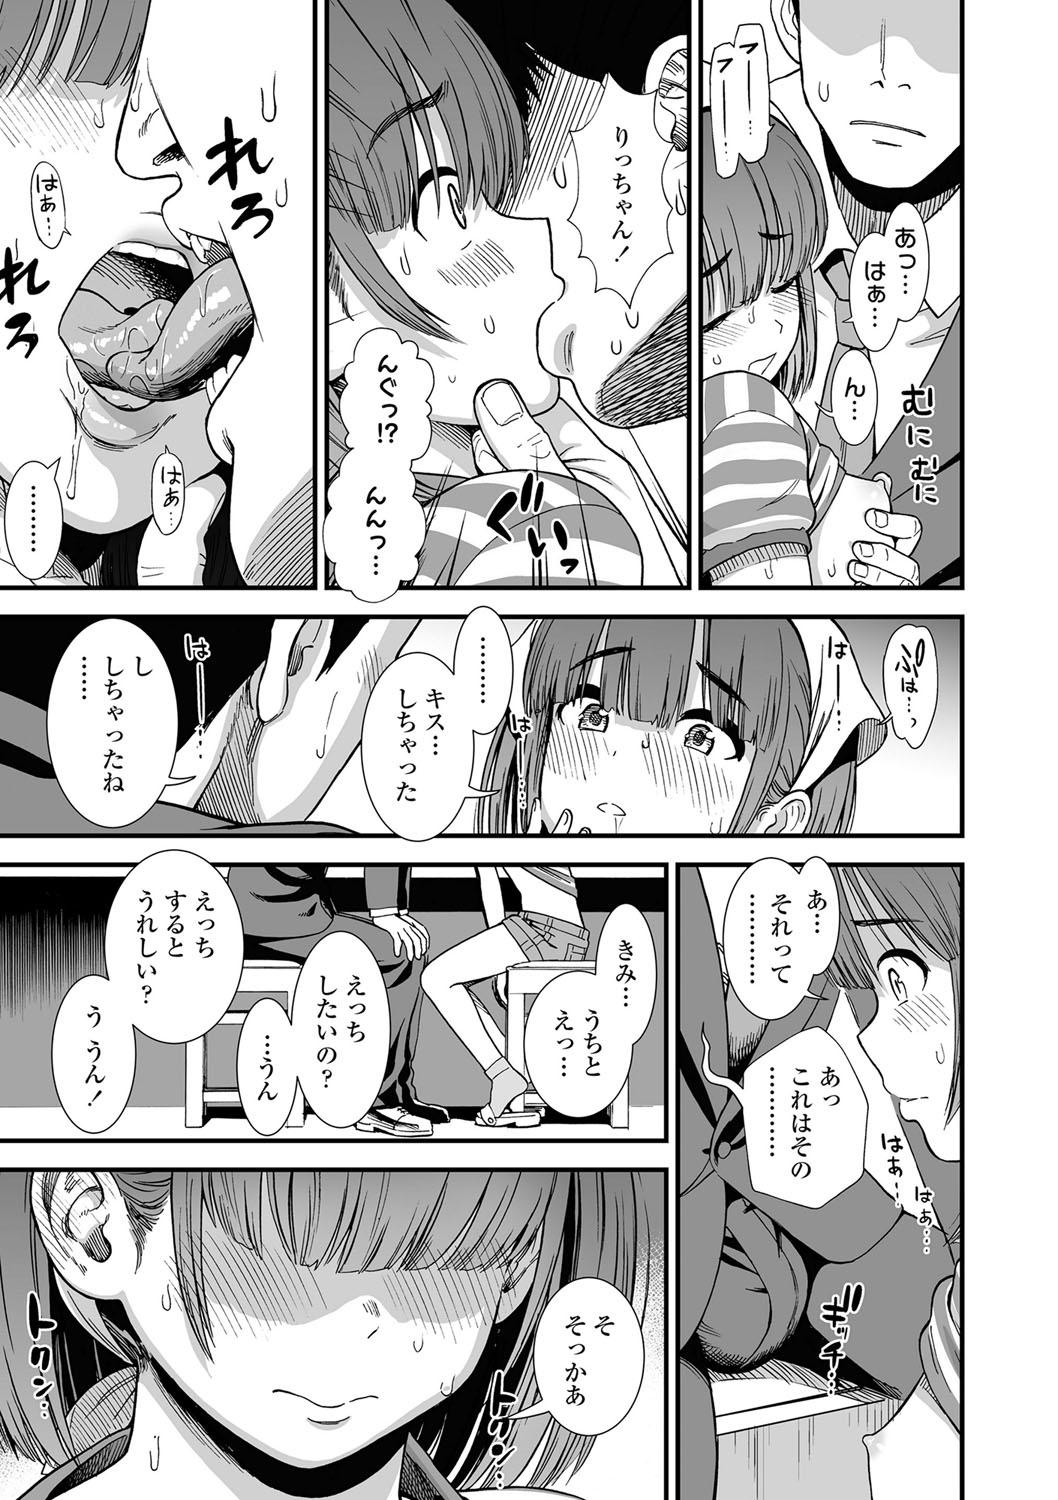 Housewife Ore wa Kuzu dakara koso Sukuwareru Kenri ga Aru! Tats - Page 12